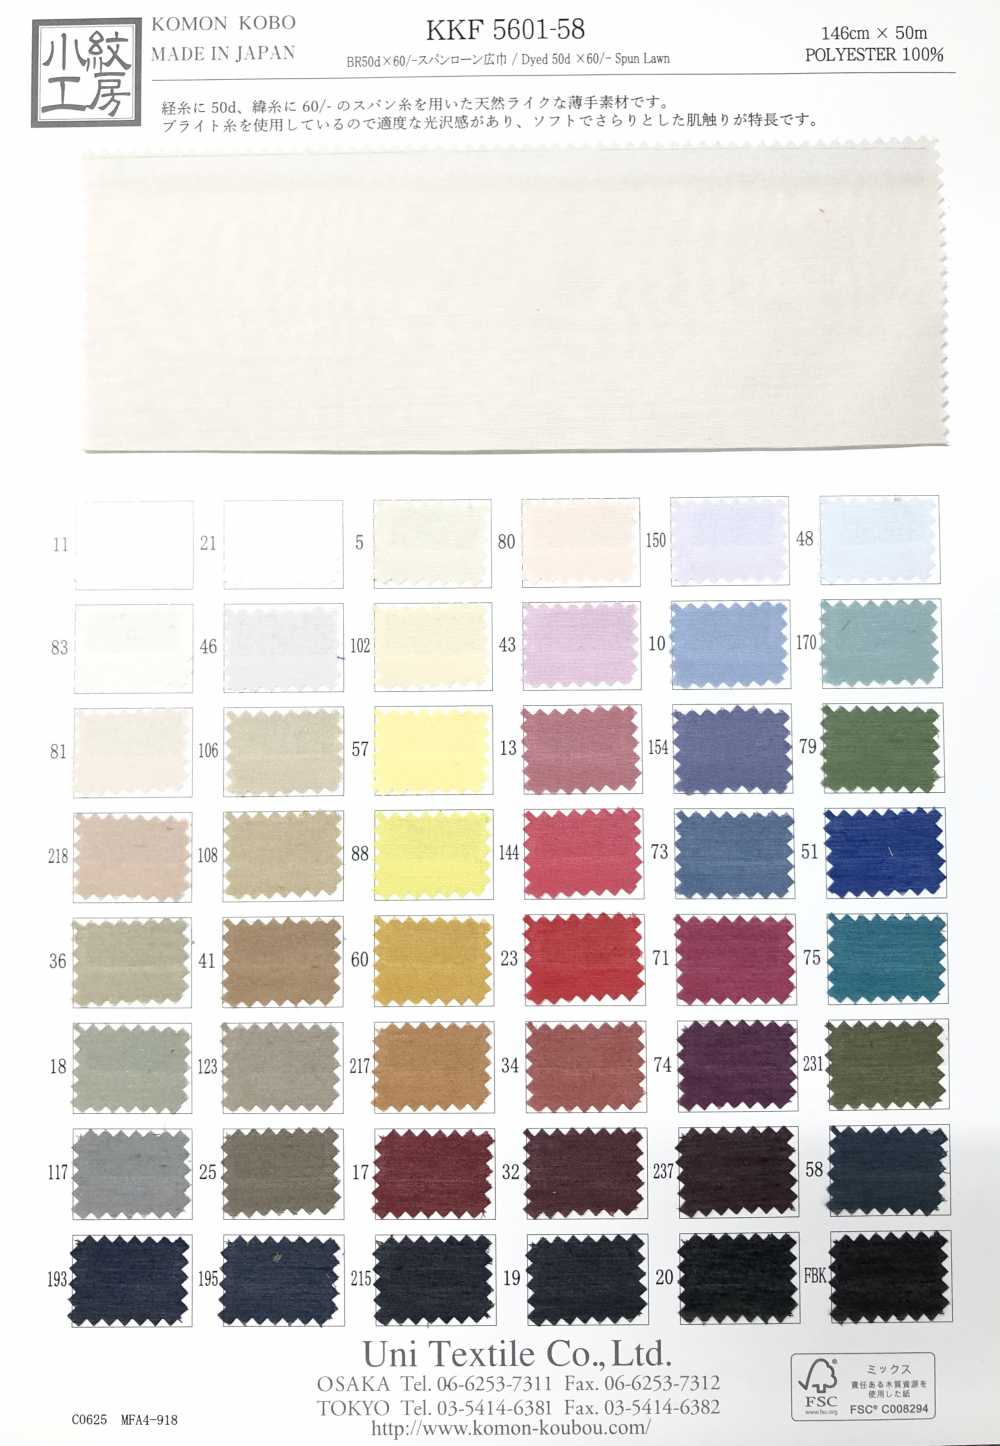 KKF5601-58 Larghezza Ampia × 60/larghezza Per Prato Filato[Tessile / Tessuto] Uni Textile